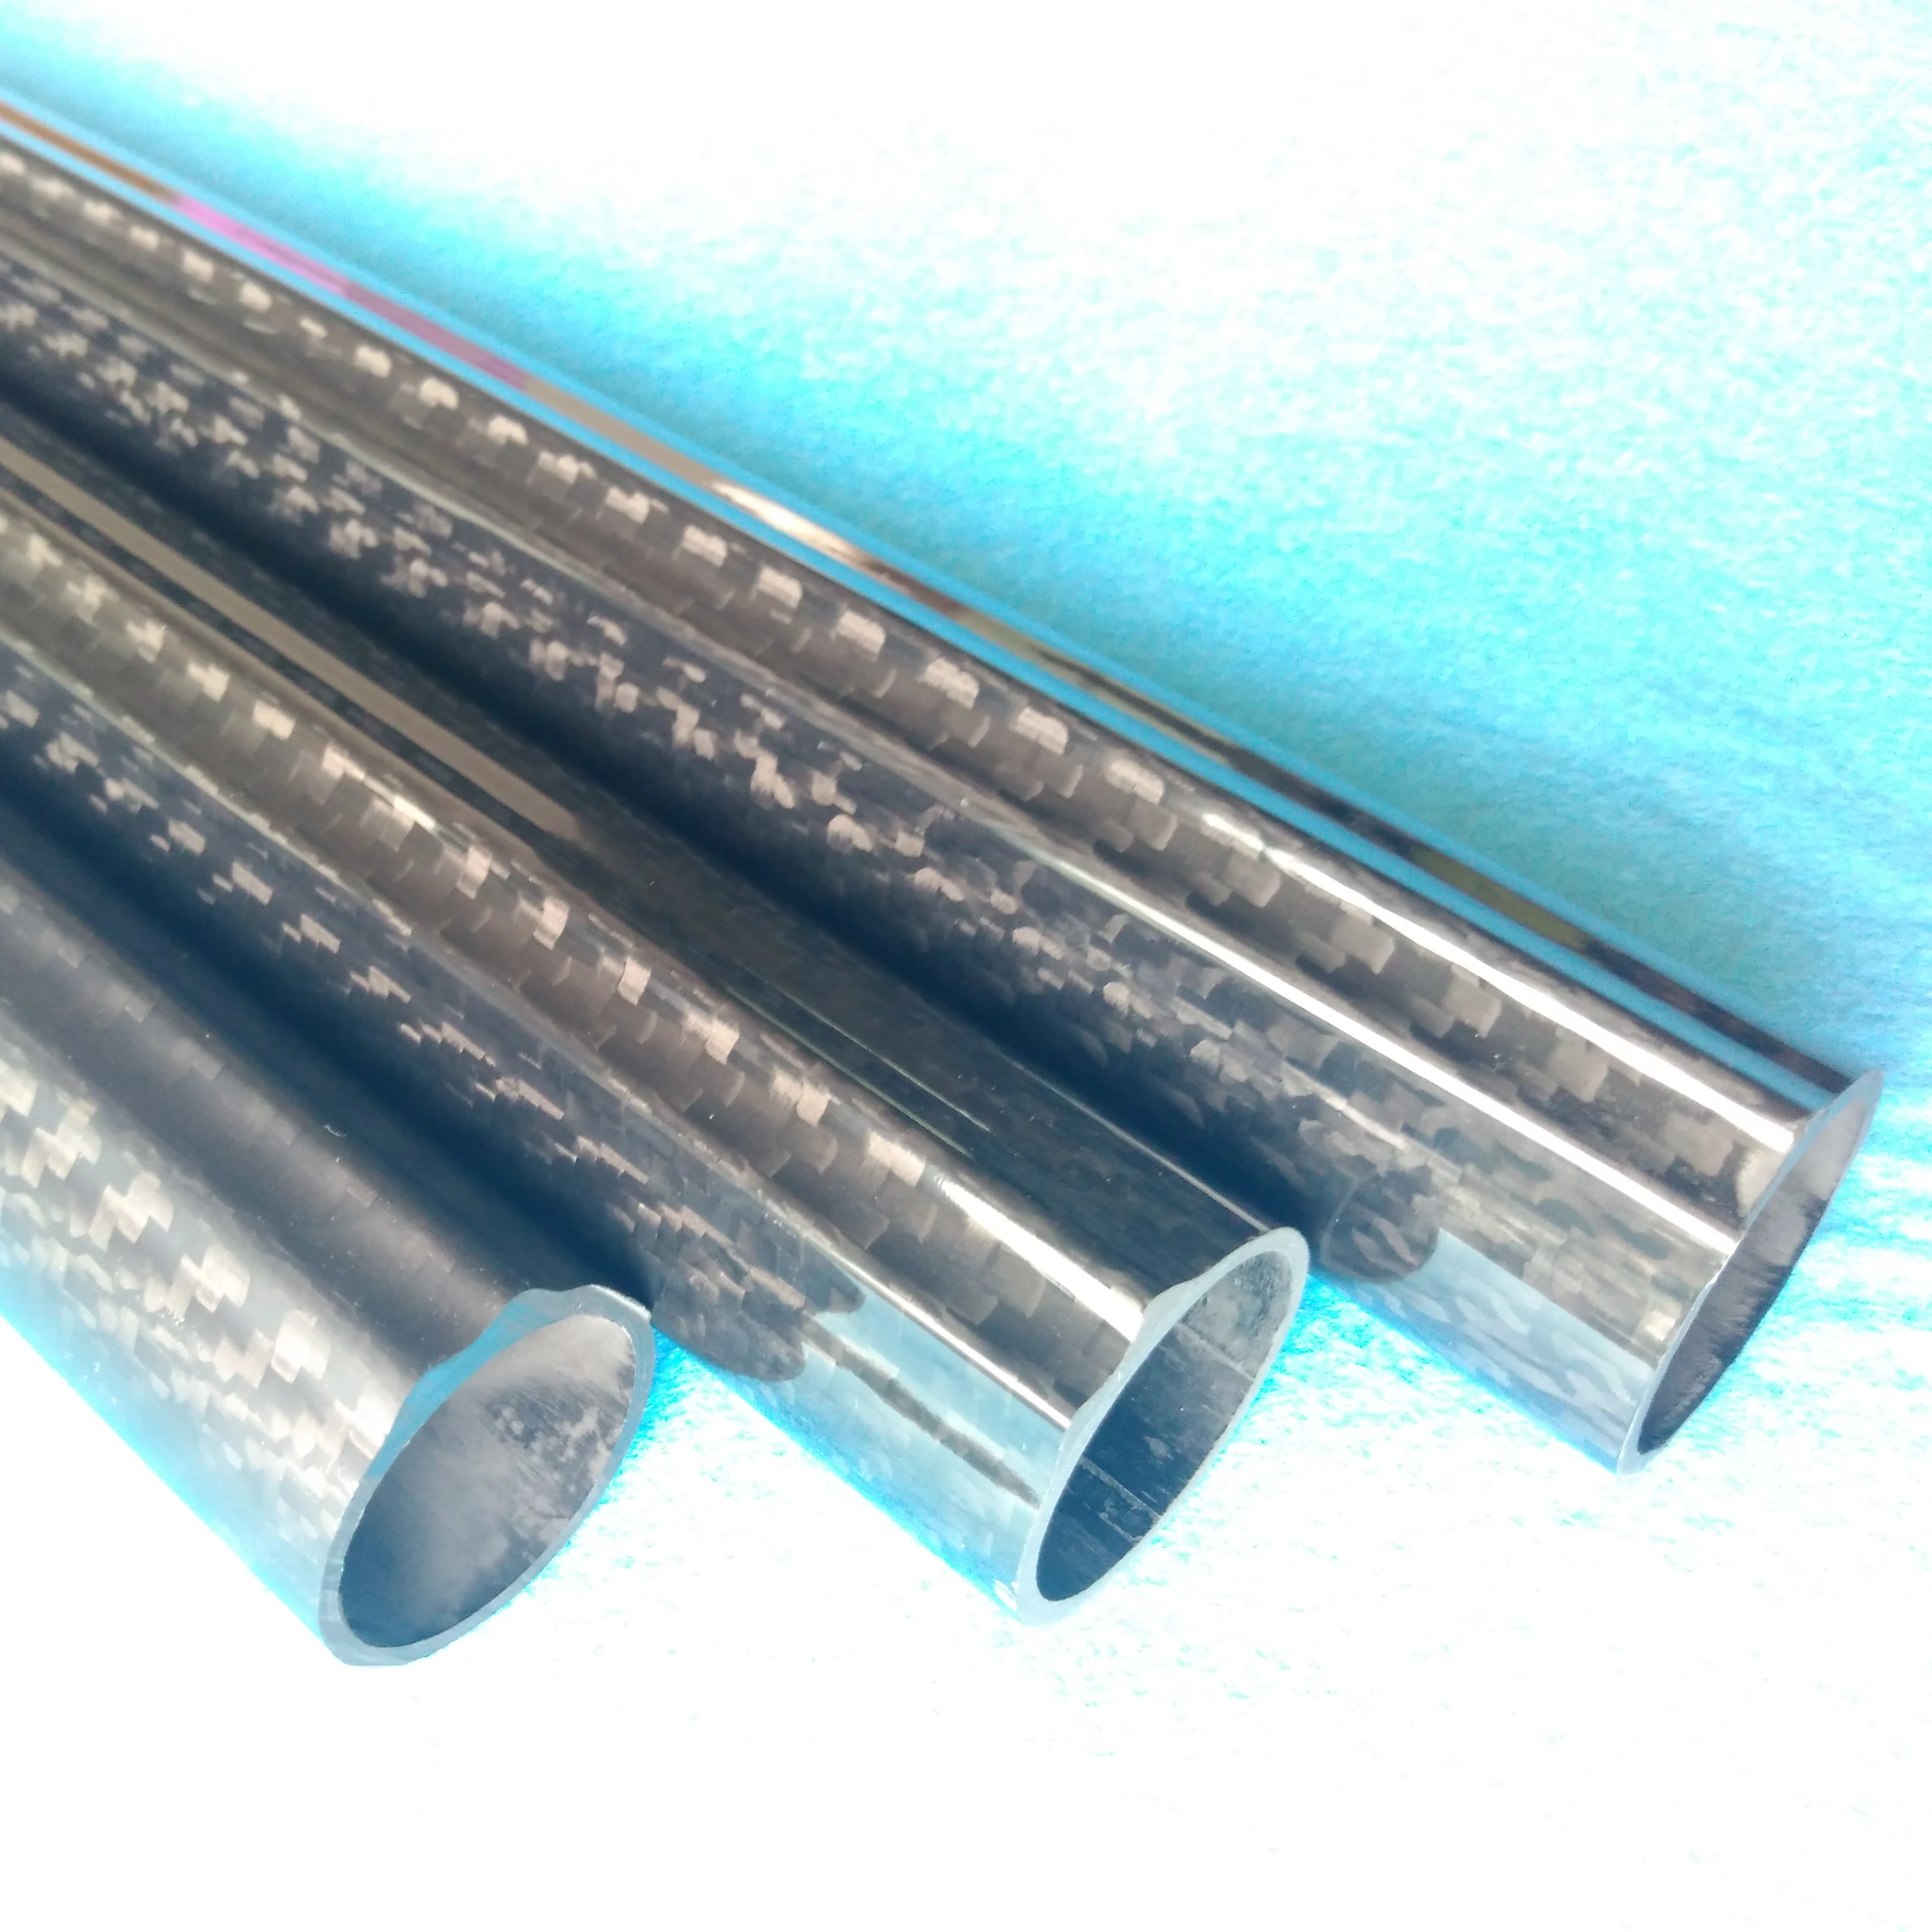 Wholesaler ID 26mm OD 31mm carbon fiber speargun barrels/tubes in stock